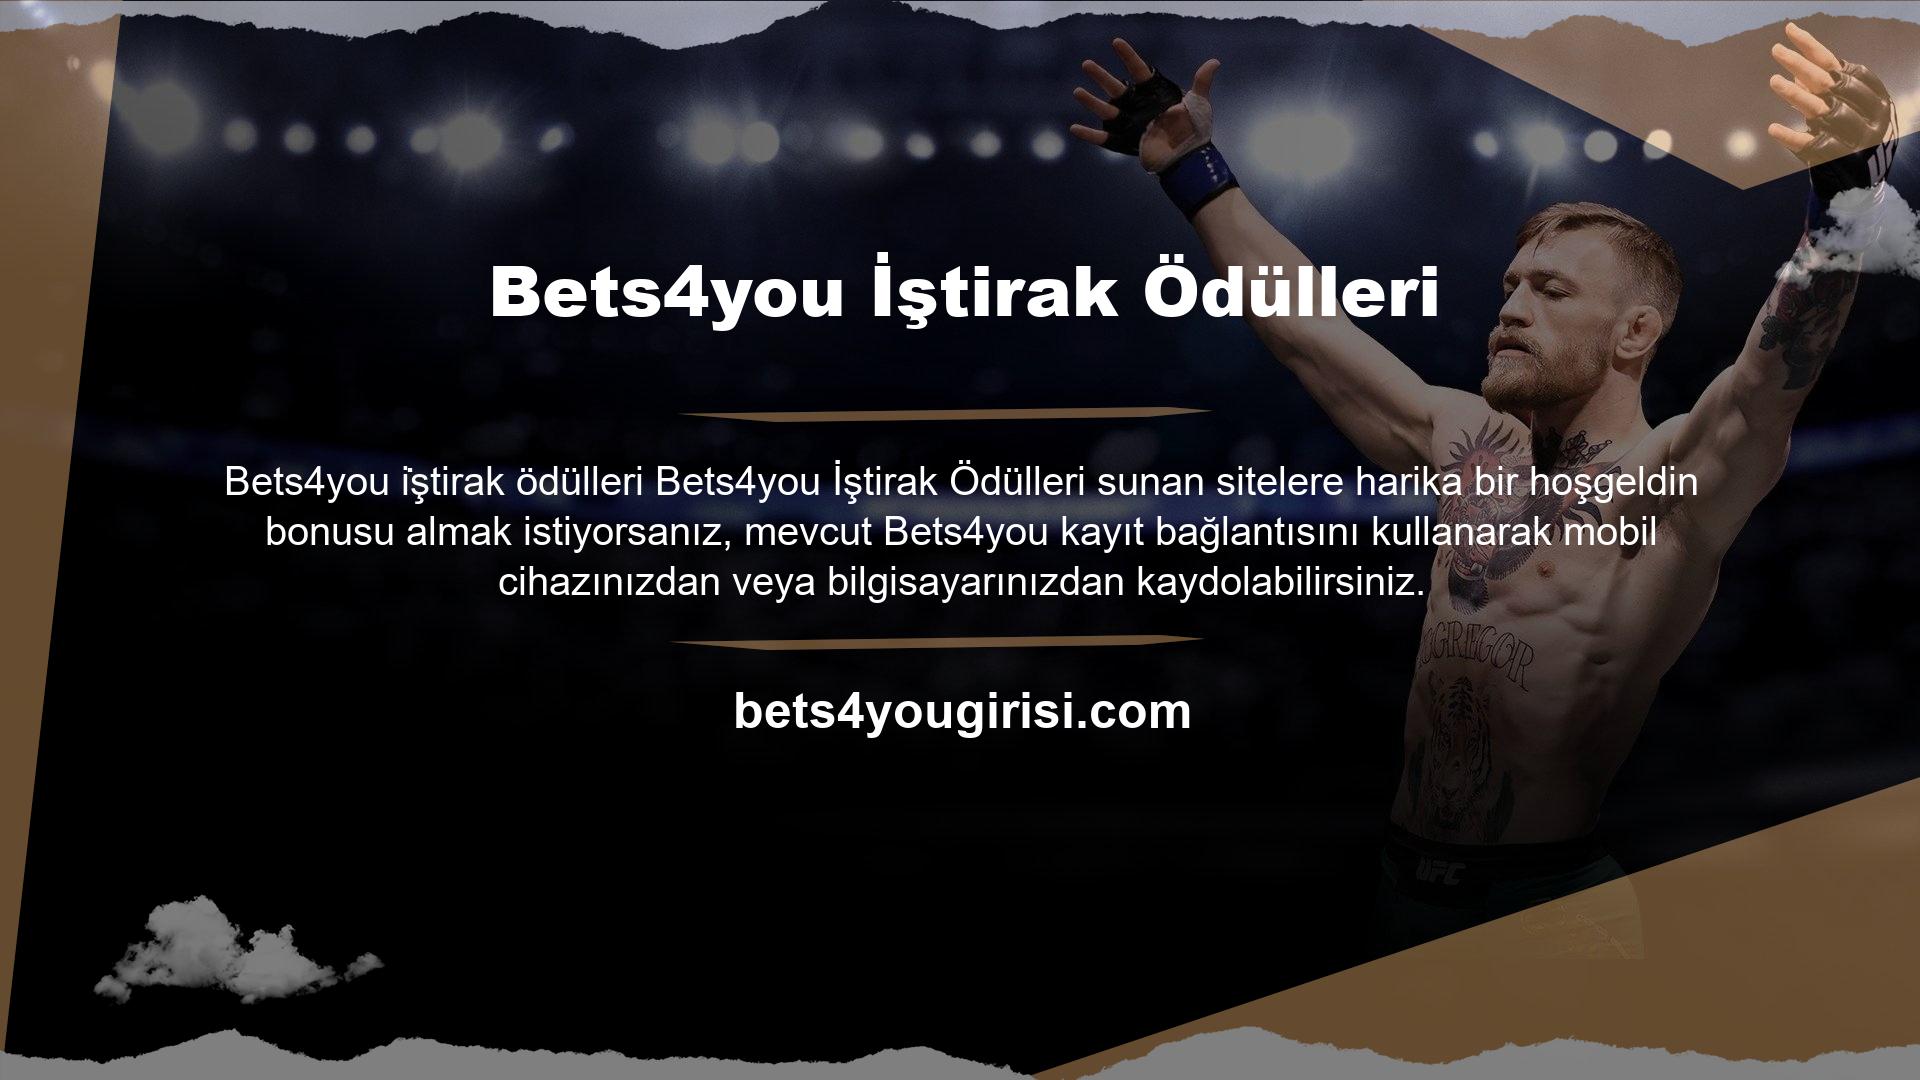 Türkiye'de canlı bahis siteleri söz konusu olduğunda Bets4you bir numaradır